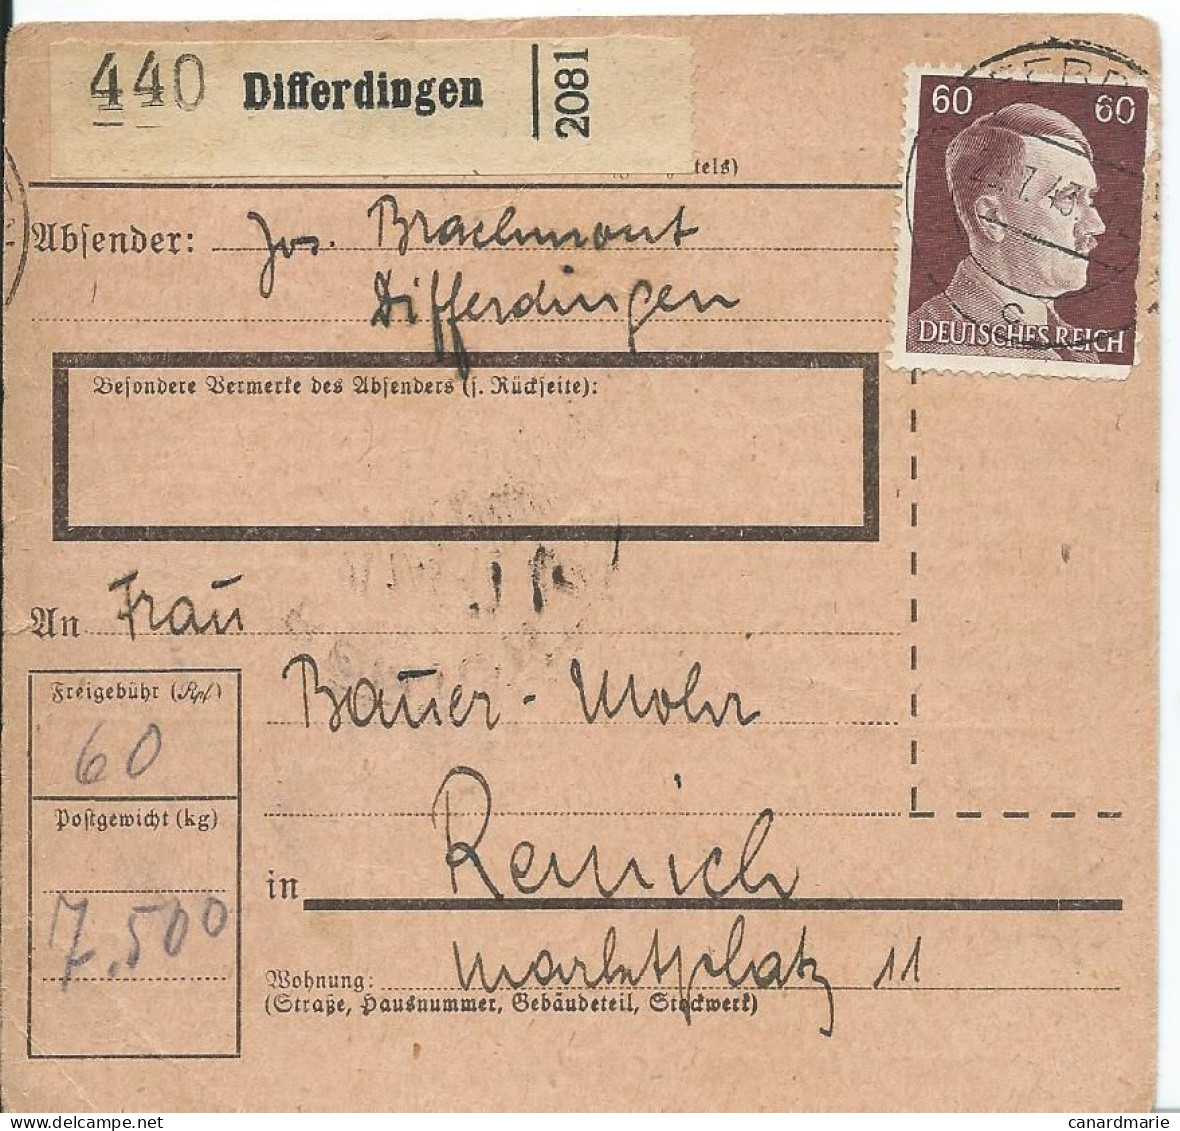 2 BULLETINS DE COLIS POSTAUX 1943/44 AVEC ETIQUETTES DE DIFFERDINGEN - 1940-1944 Duitse Bezetting